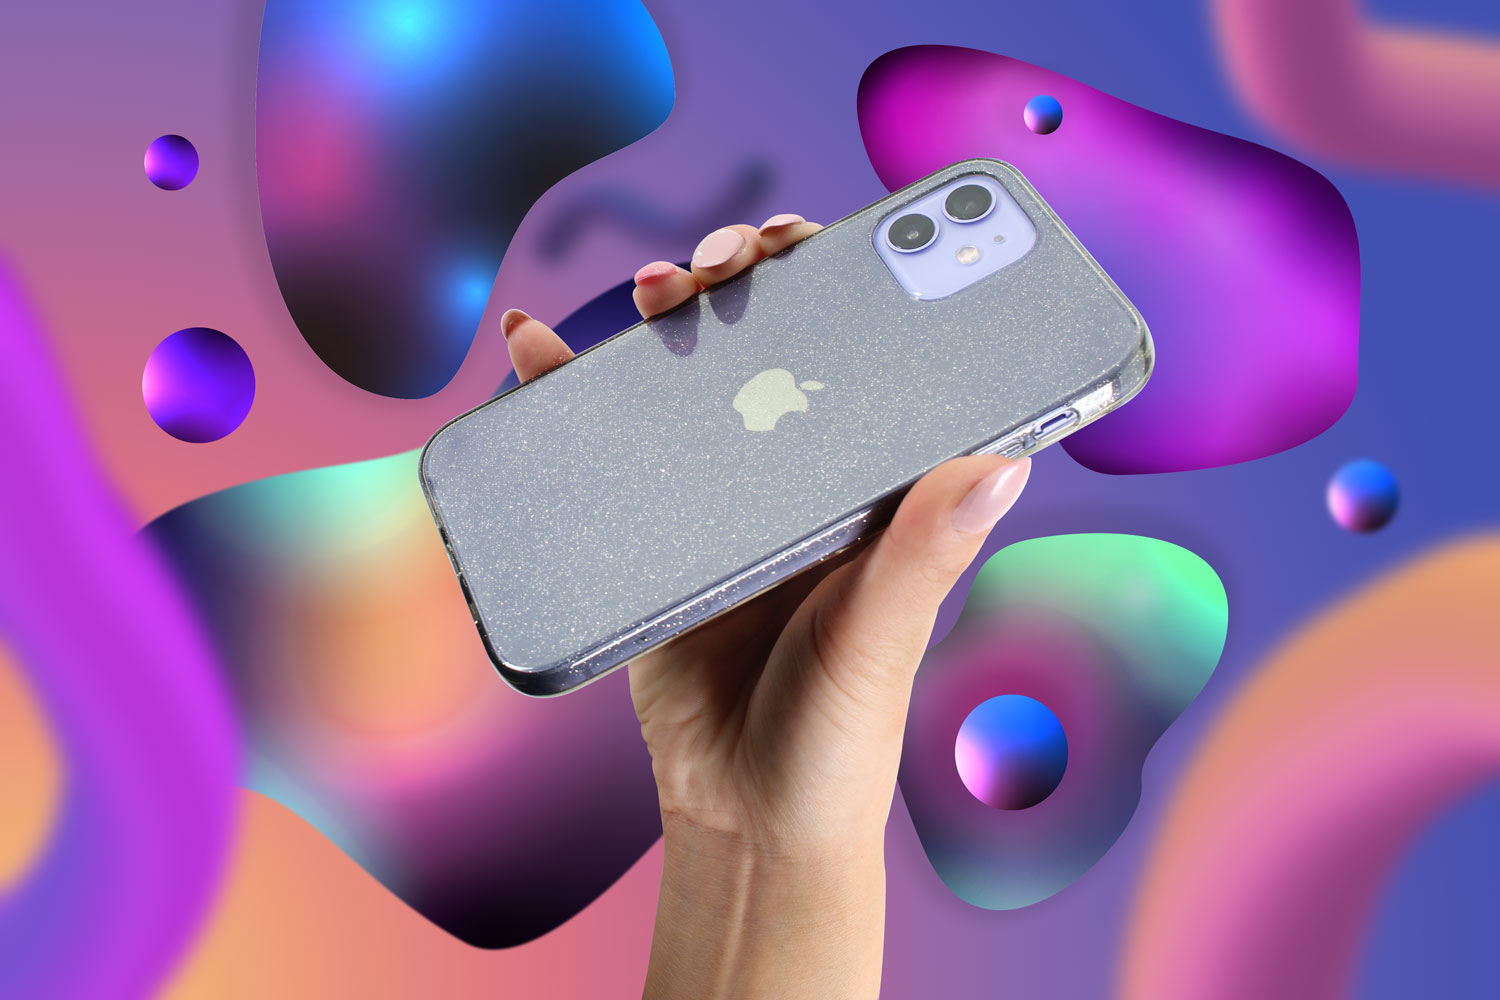 Apple iPhone XS Max szilikon tok csillogó füstszínű